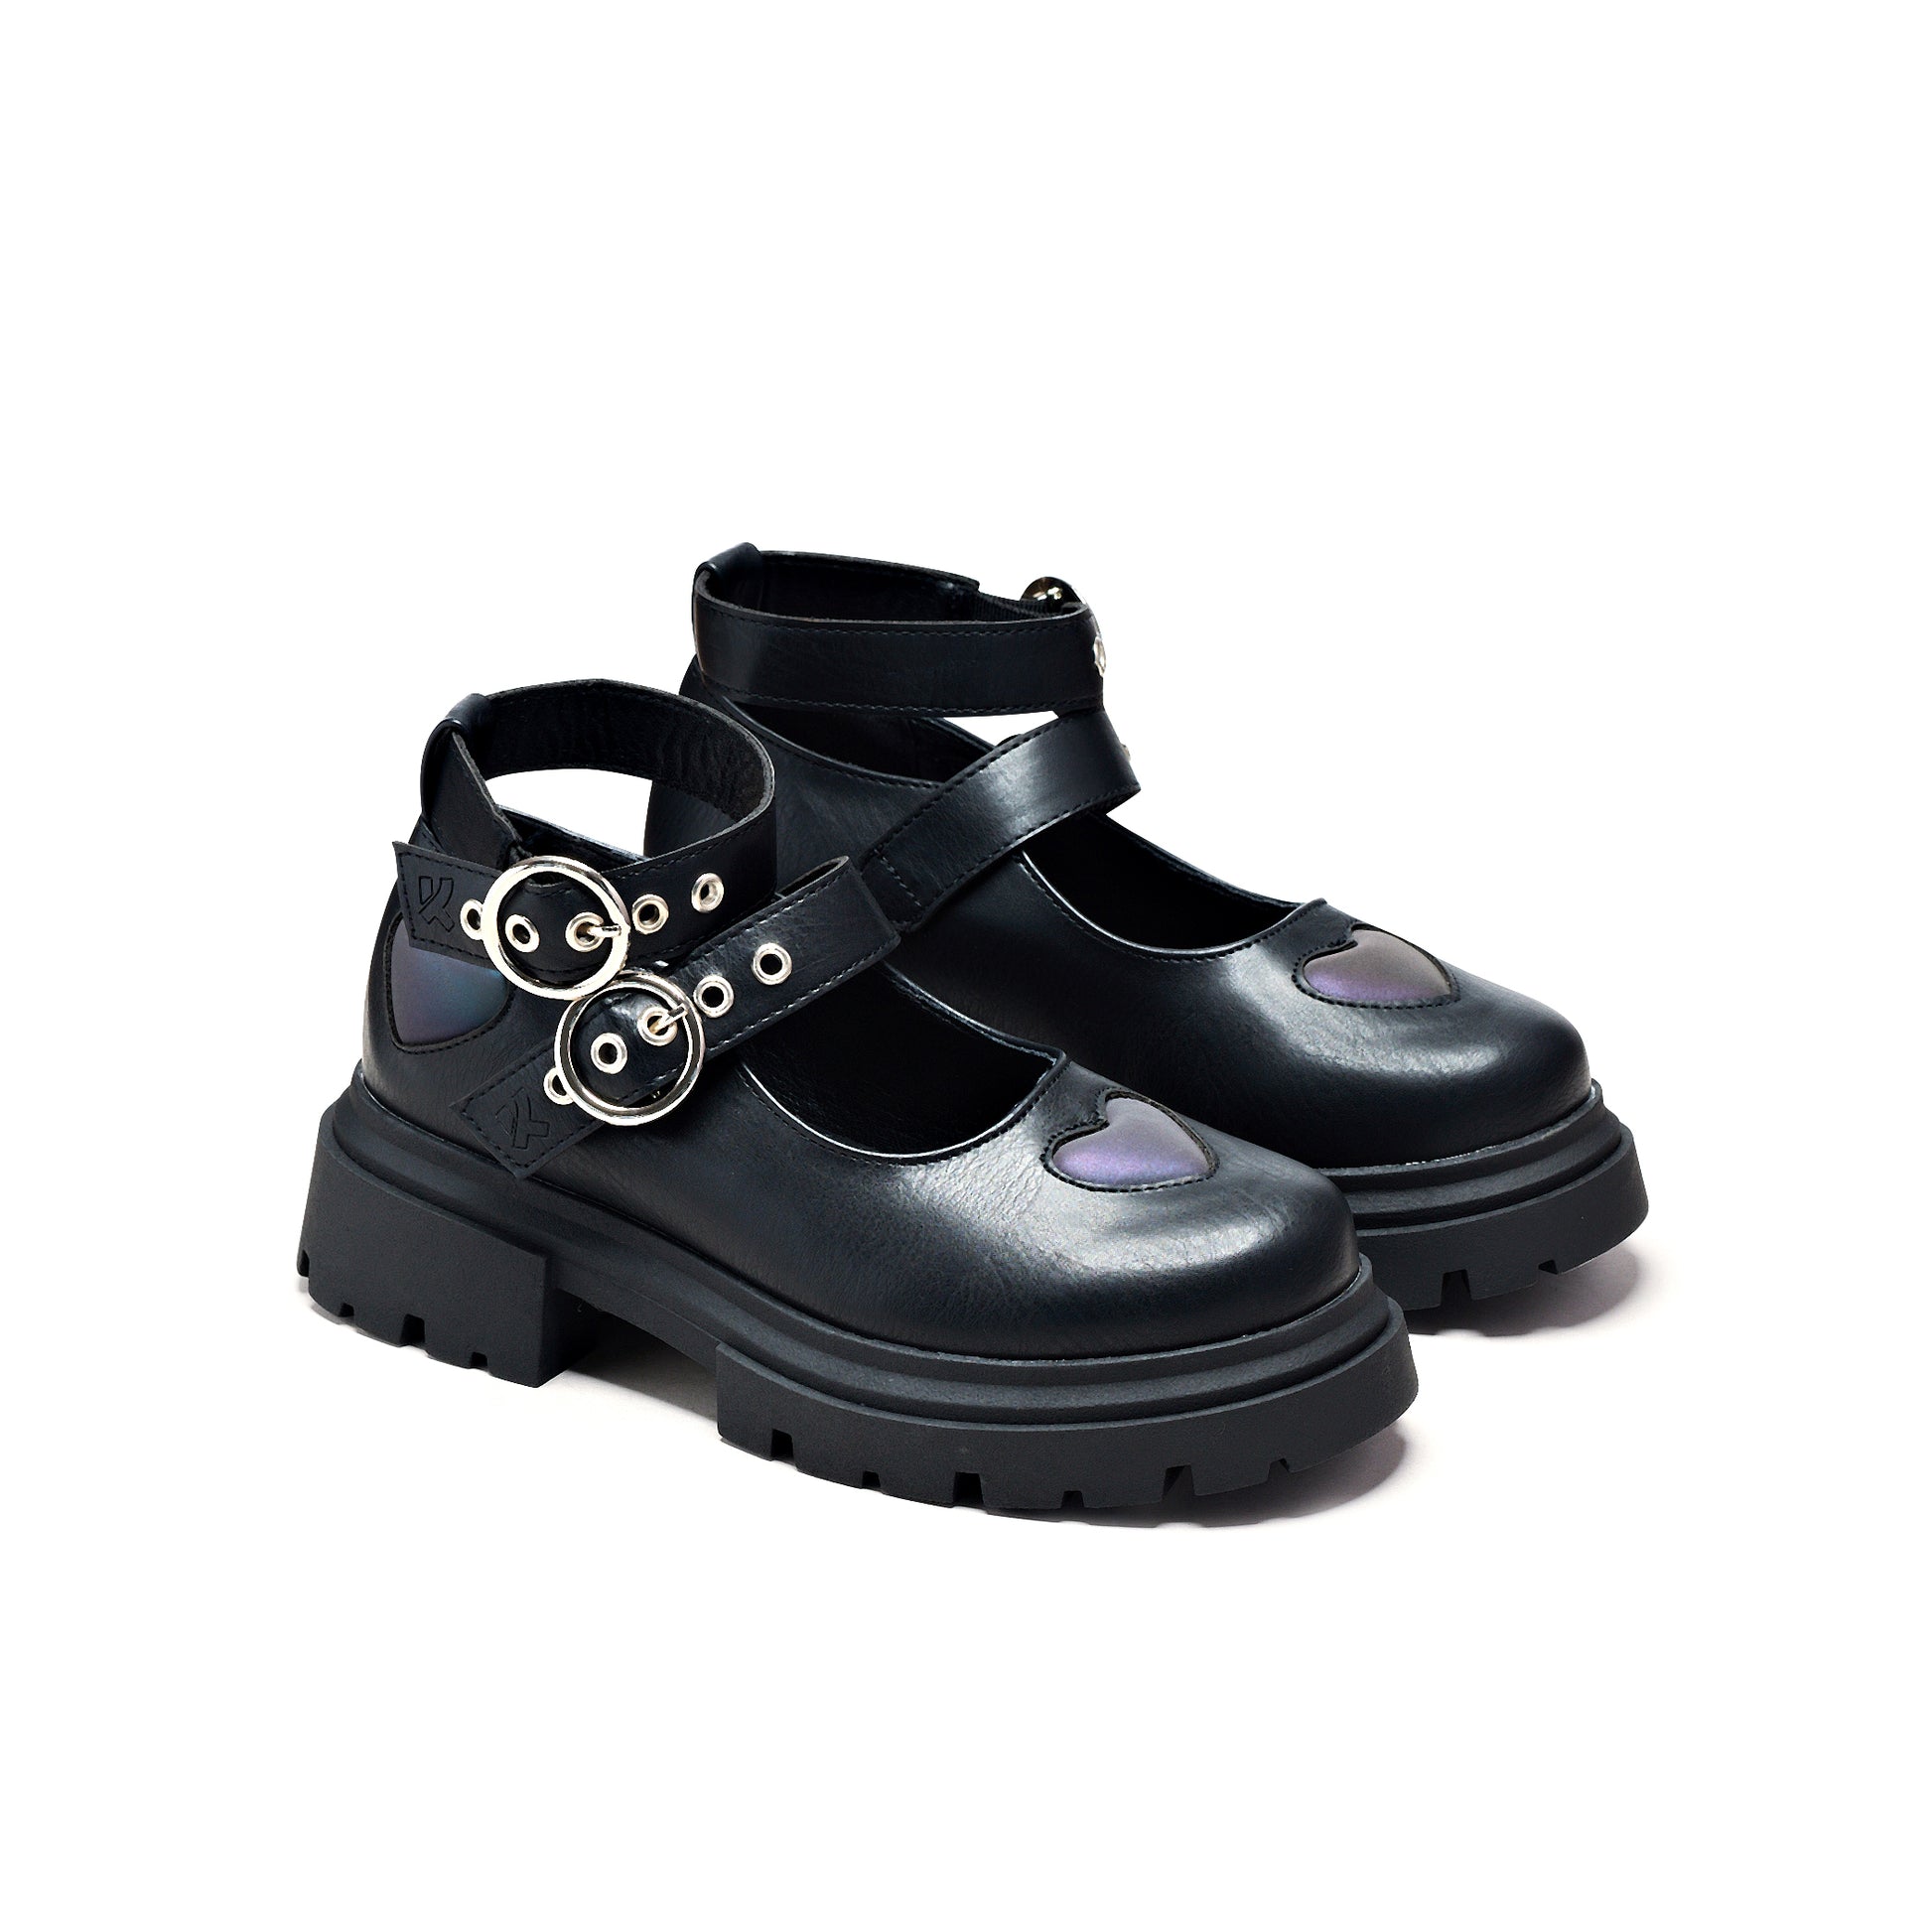 Lovebug Meadow Kidz Mary Jane Shoes - Mary Janes - KOI Footwear - Black - Three-Quarter View